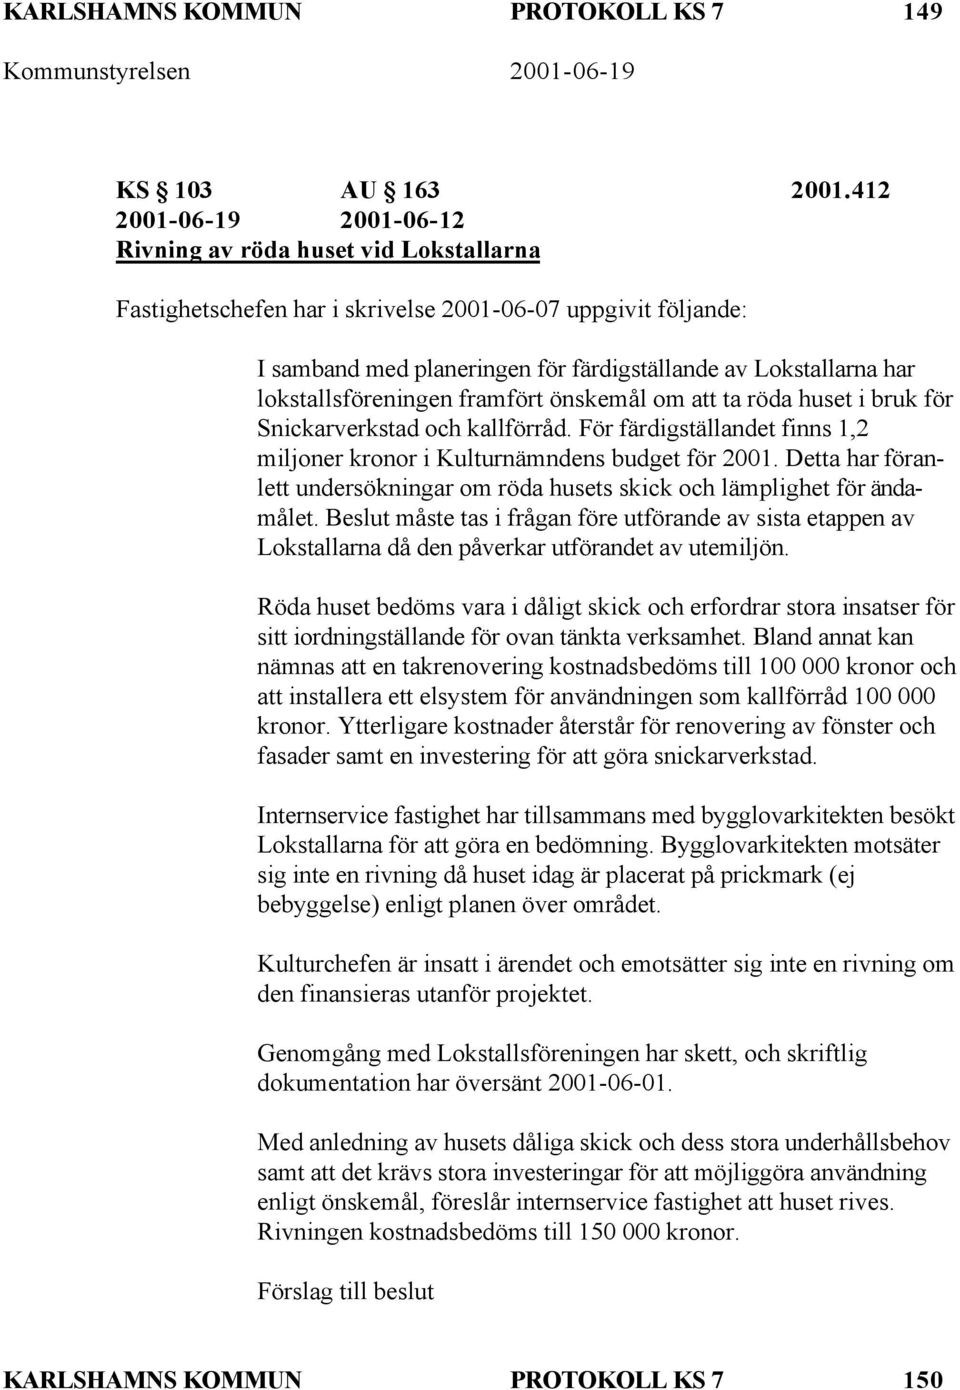 lokstallsföreningen framfört önskemål om att ta röda huset i bruk för Snickarverkstad och kallförråd. För färdigställandet finns 1,2 miljoner kronor i Kulturnämndens budget för 2001.